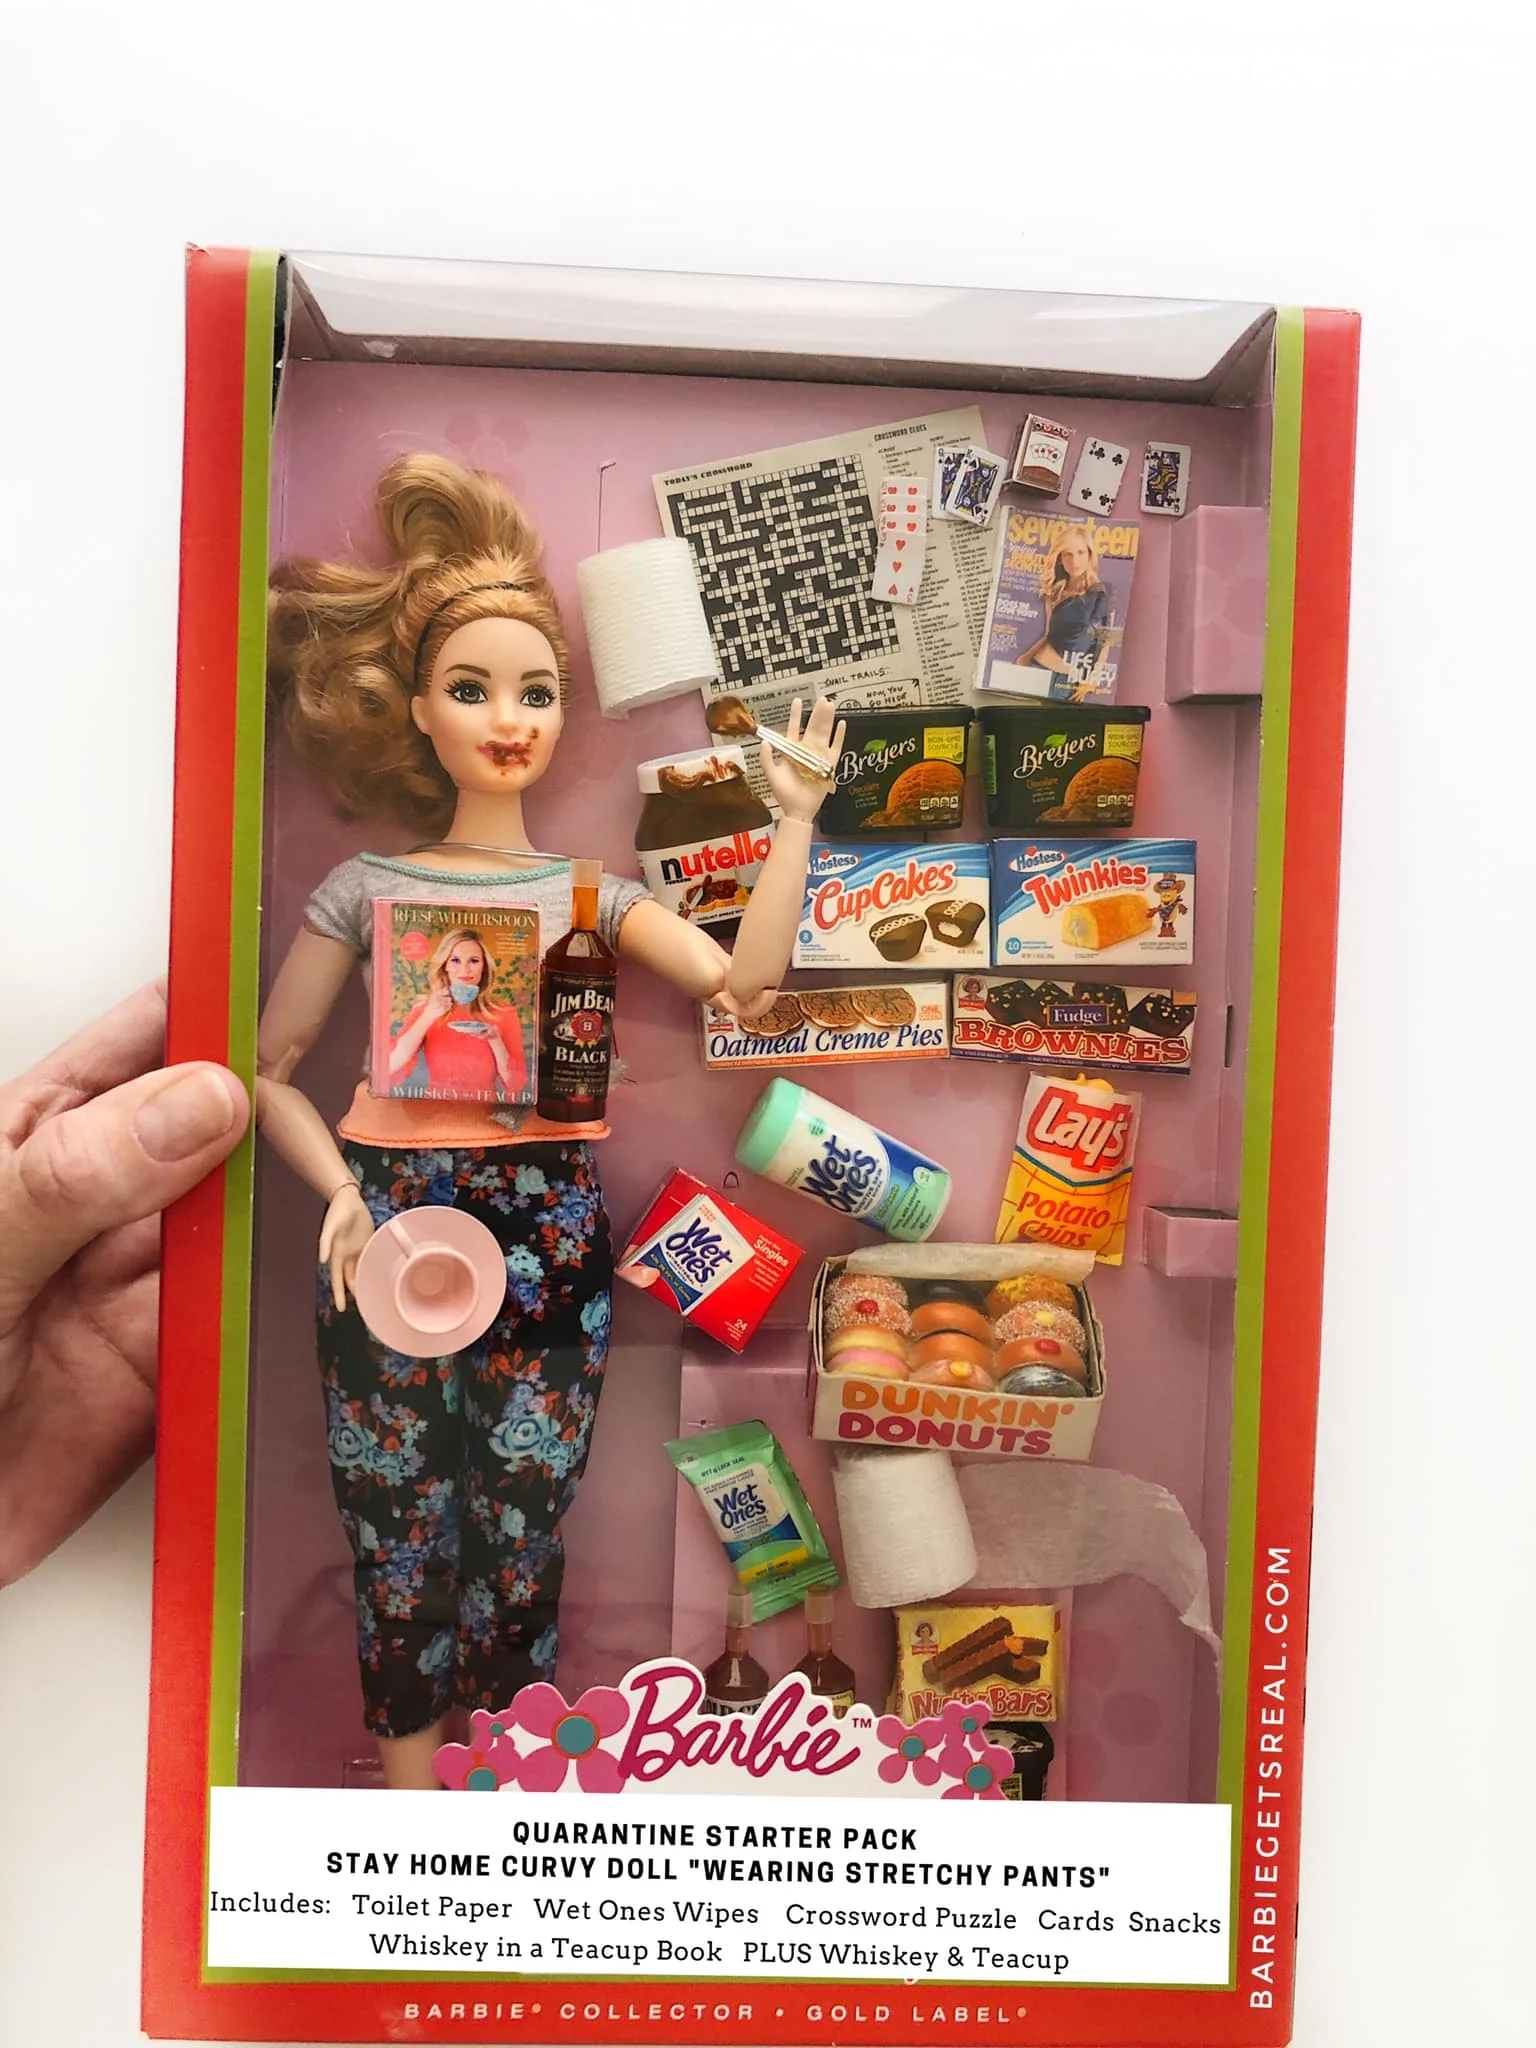 Женщина создала реалистичных кукол Барби, сидящих на карантине – такими их еще не видели - фото 479753